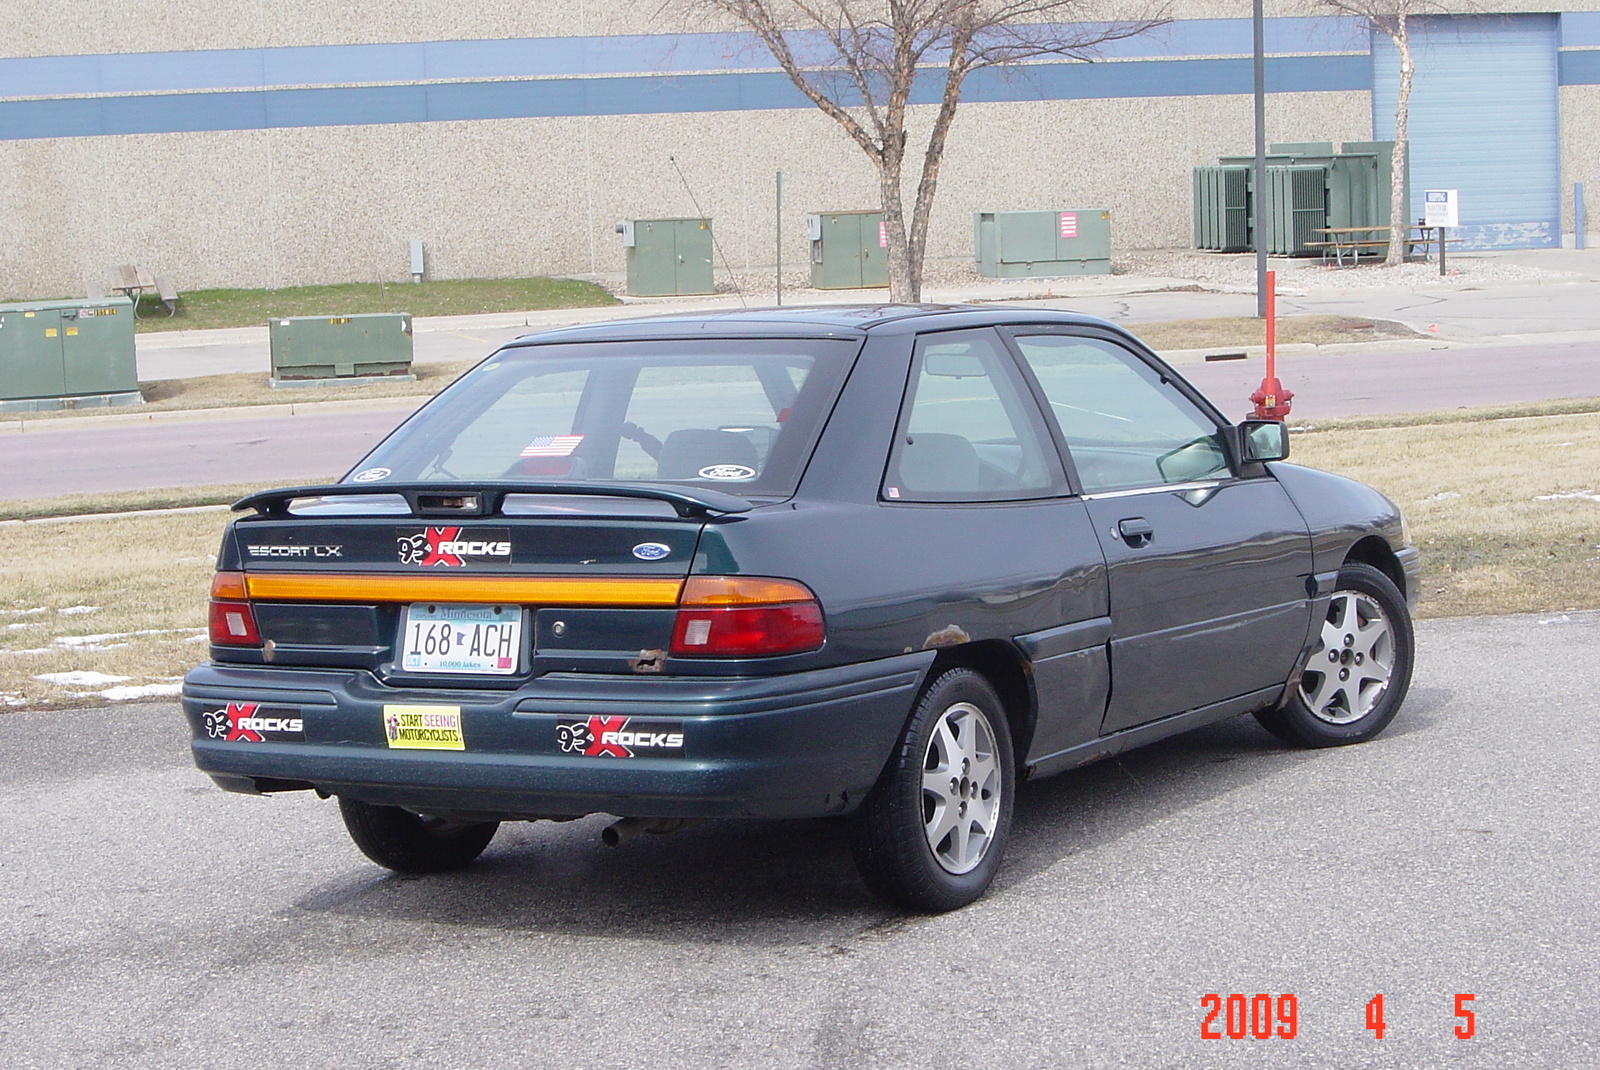 1995 Ford escort 2 door hatchback #4